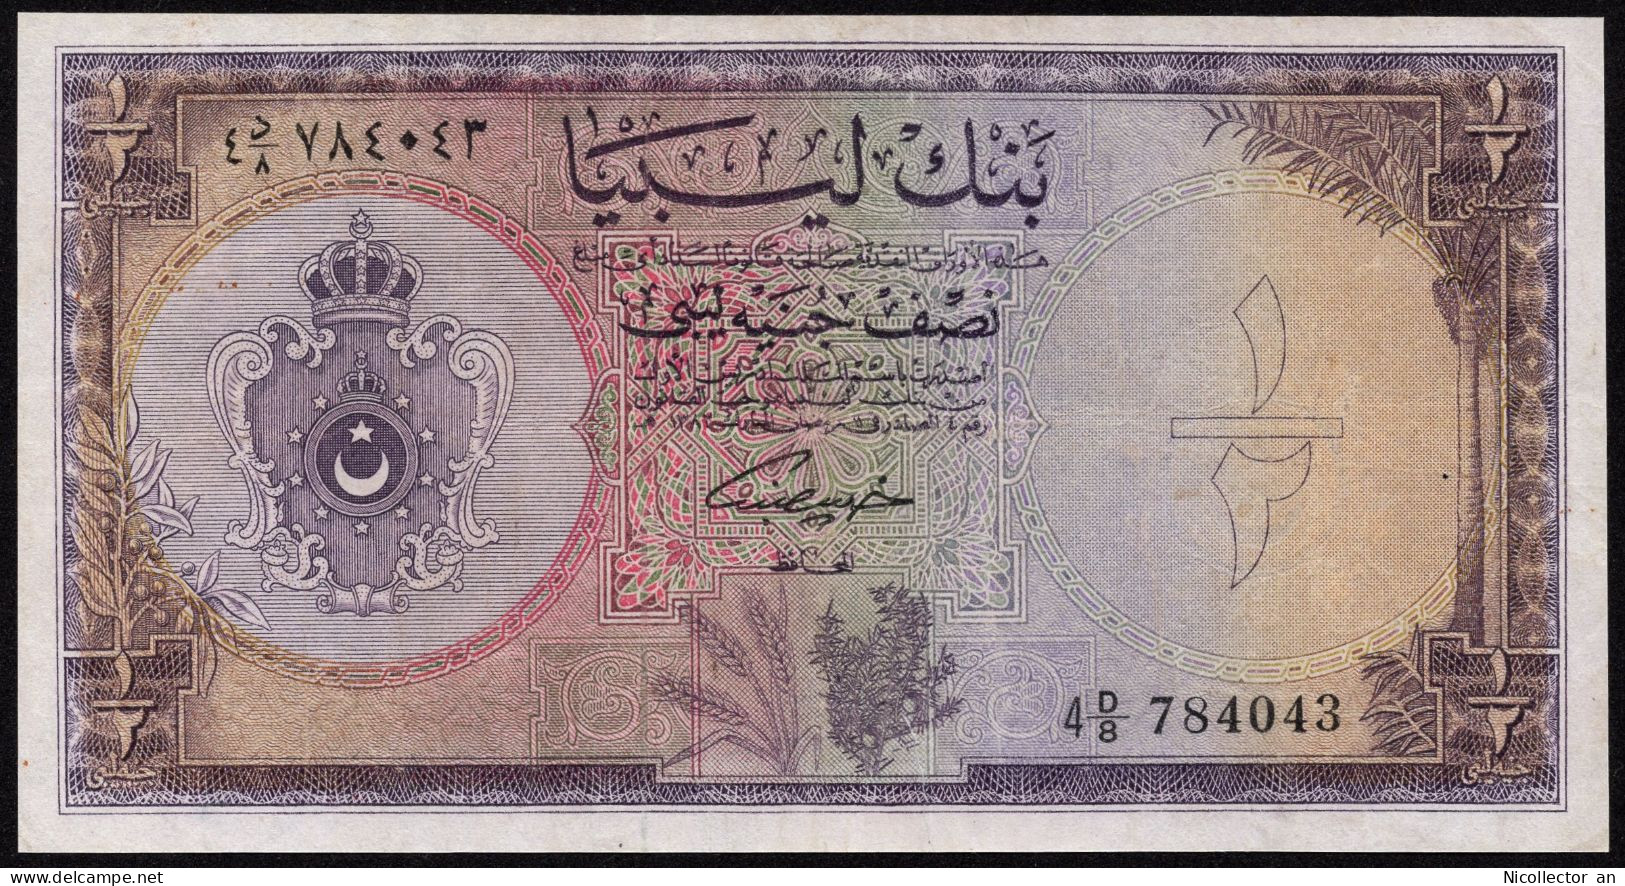 Libya 1/2 Pound 1963 P-24 King Idris *XF* Rare Banknote - Libië